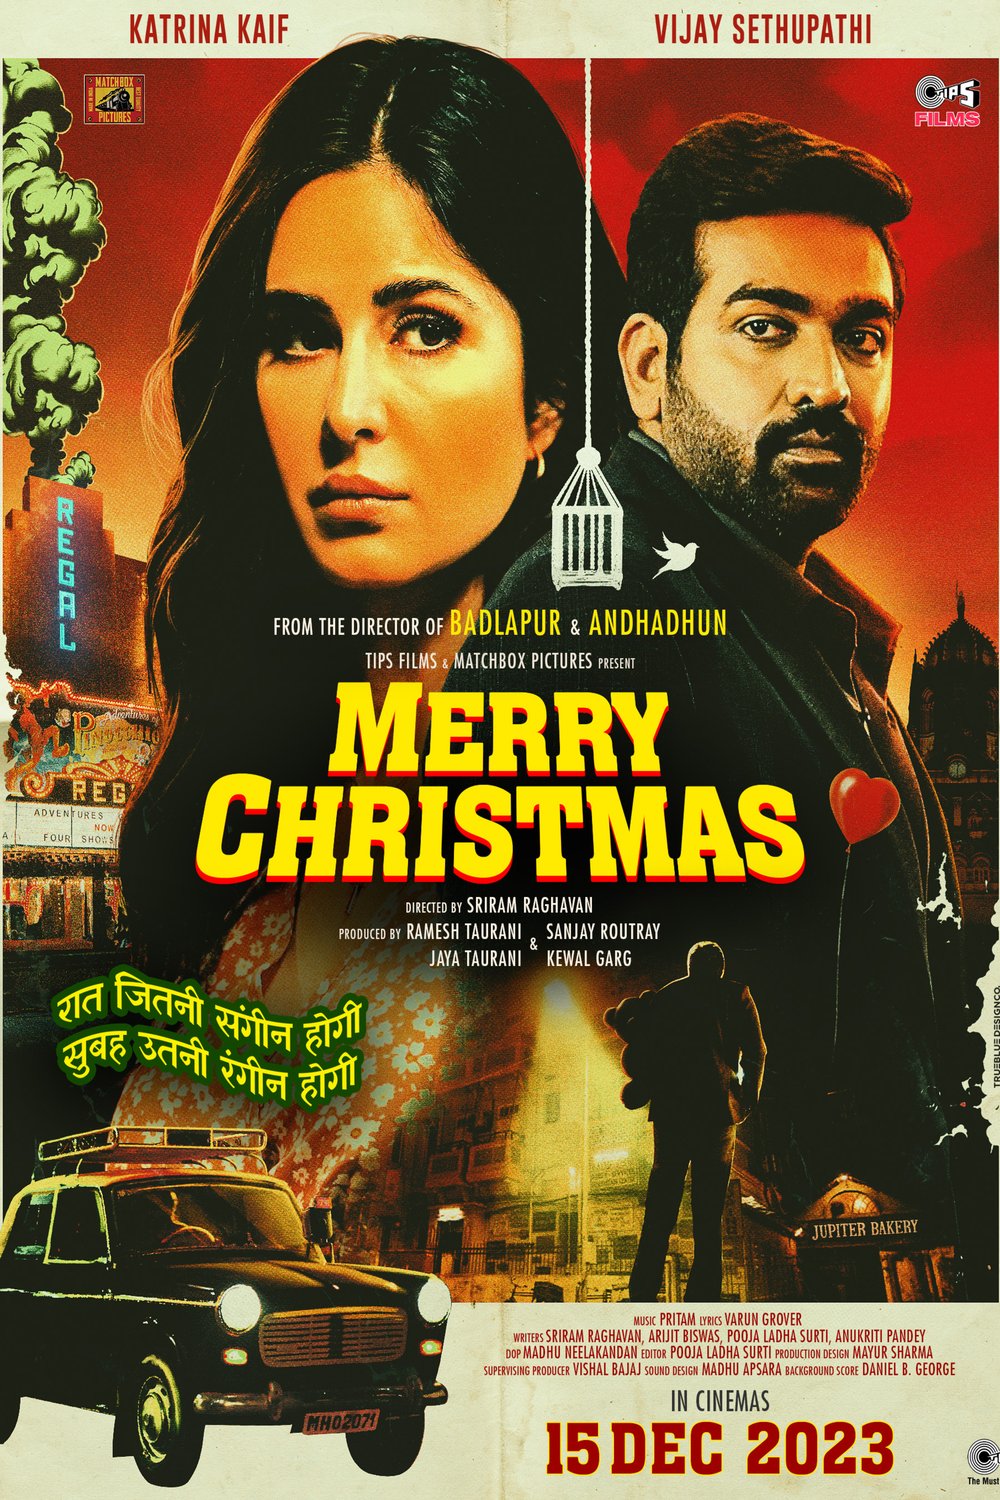 L'affiche originale du film Merry Christmas en Hindi